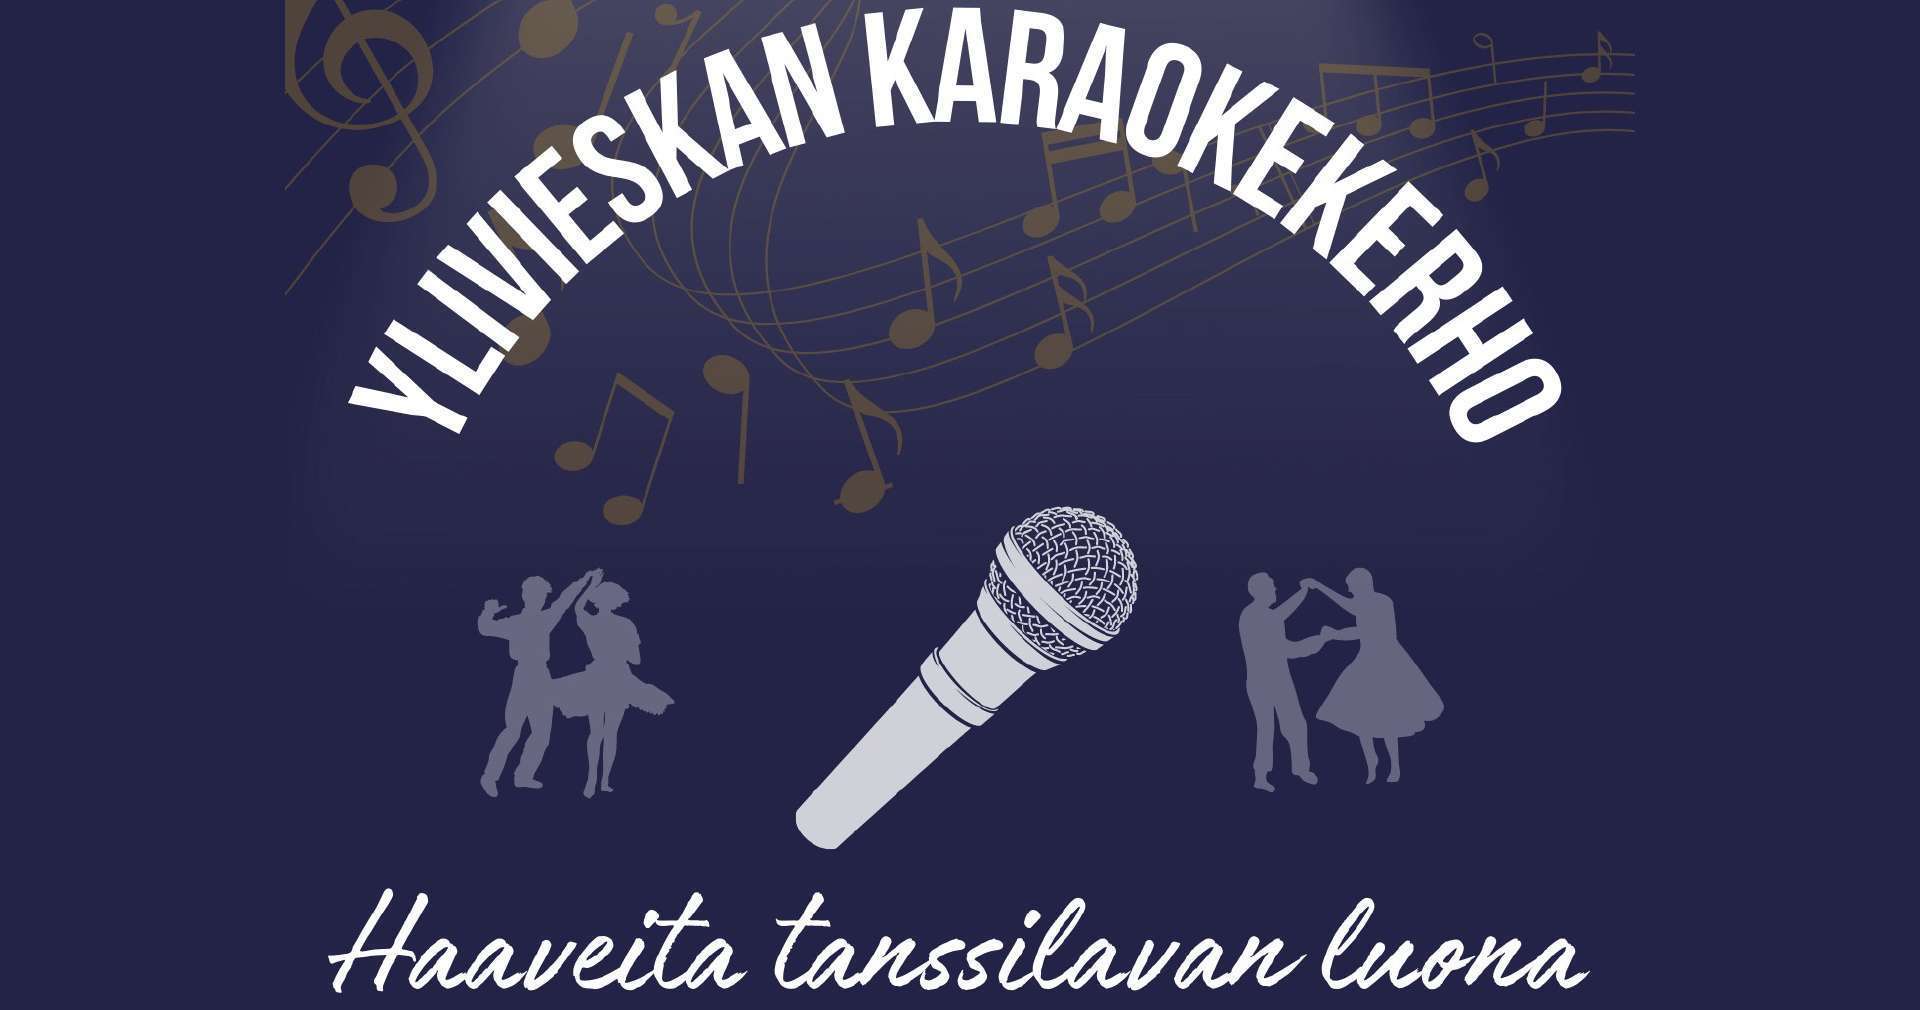 Ylivieskan karaokekerho - Haaveita tanssilavan luona